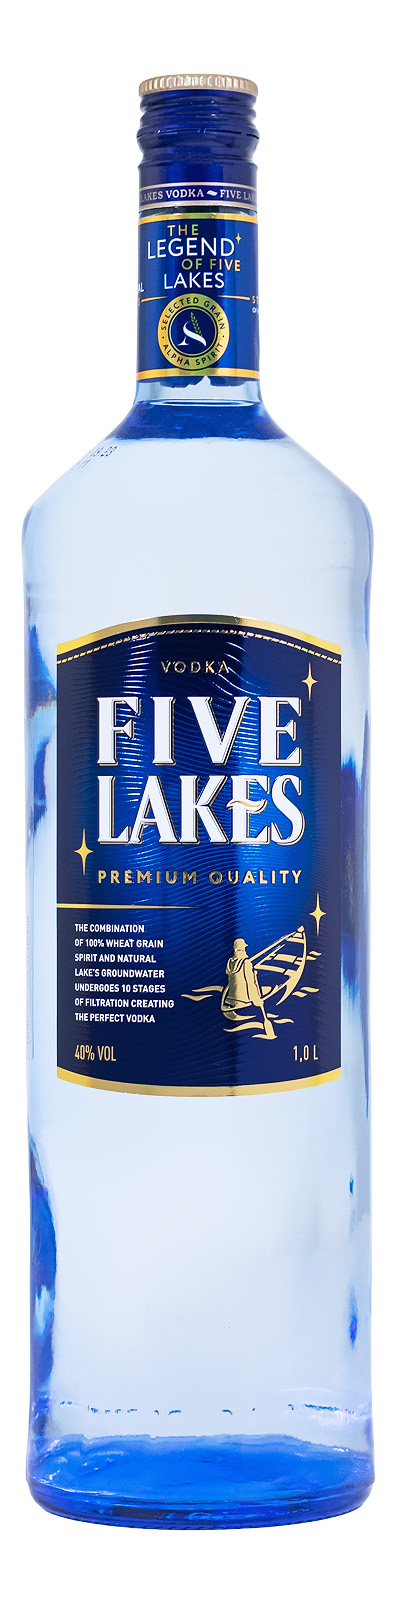 Five Lakes Vodka - 1 Liter 40% vol